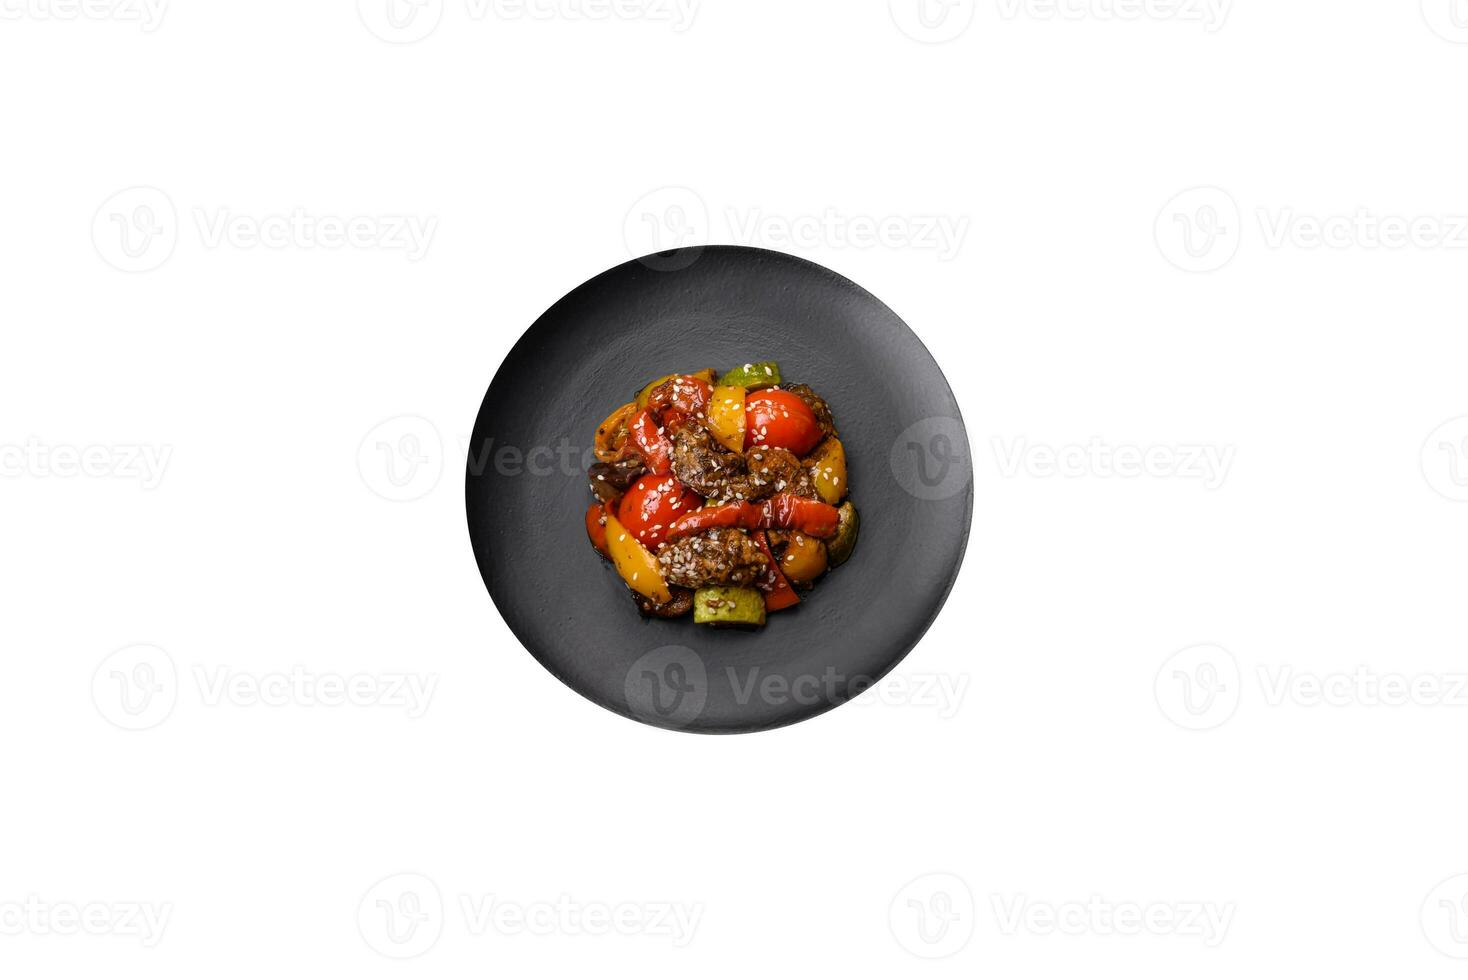 värma sallad med kalvkött, tomater, paprika, zucchini, sesam, salt, kryddor och örter foto